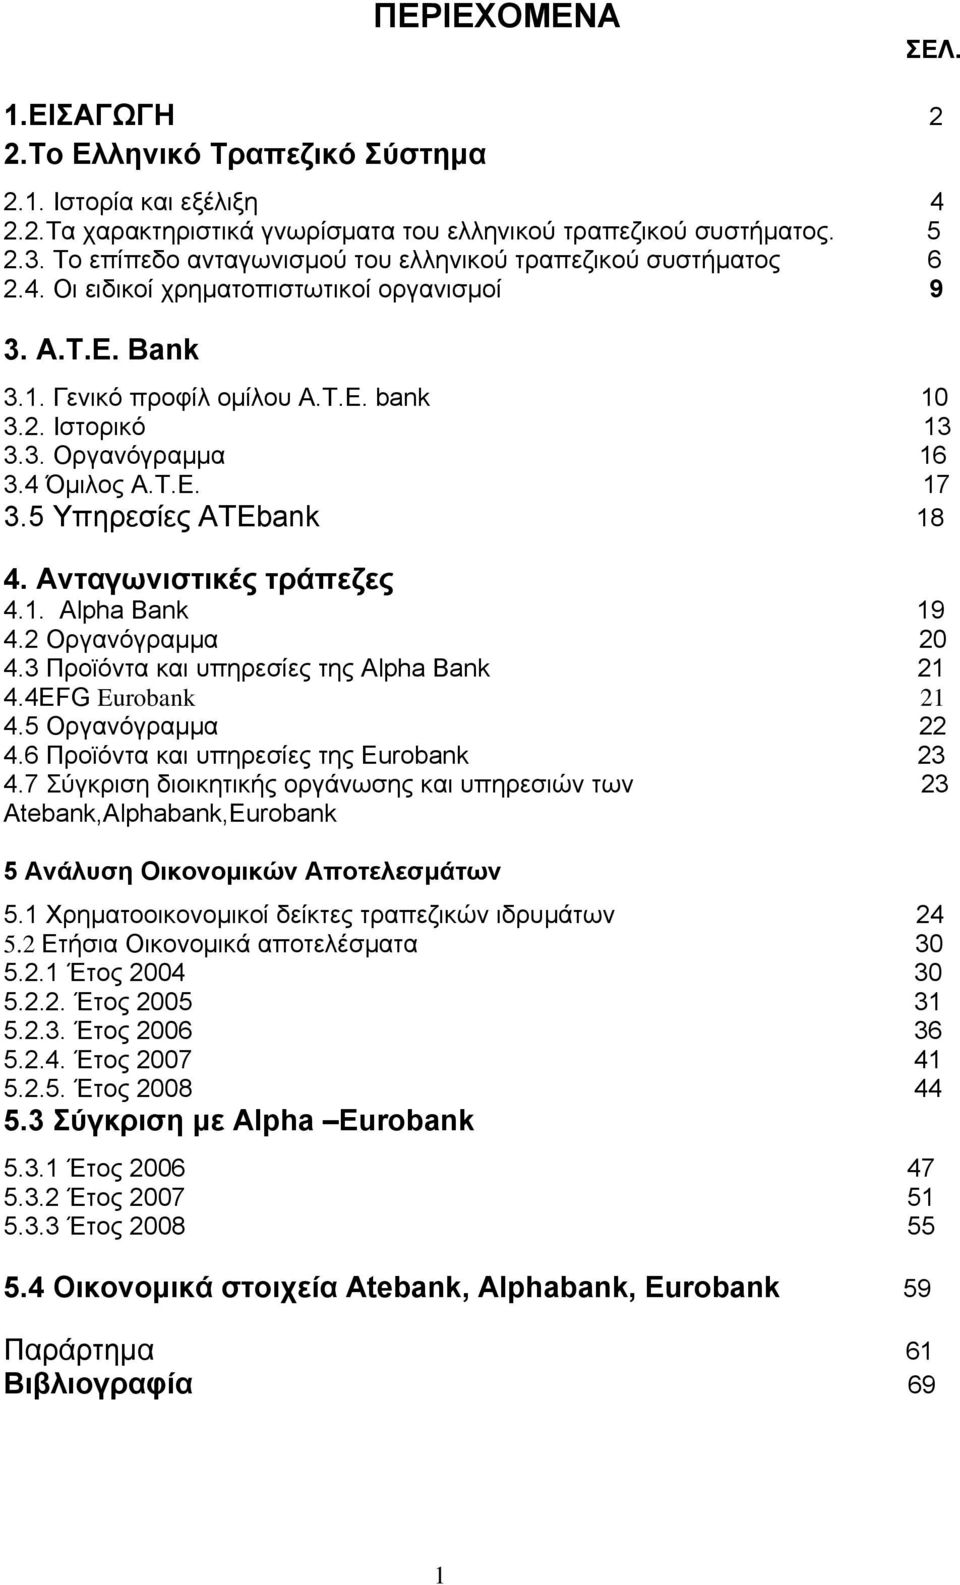 4 Όμιλος Α.Τ.Ε. 17 3.5 Υπηρεσίες ATEbank 18 4. Ανταγωνιστικές τράπεζες 4.1. Alpha Bank 19 4.2 Οργανόγραμμα 20 4.3 Προϊόντα και υπηρεσίες της Alpha Bank 21 4.4EFG Eurobank 21 4.5 Οργανόγραμμα 22 4.